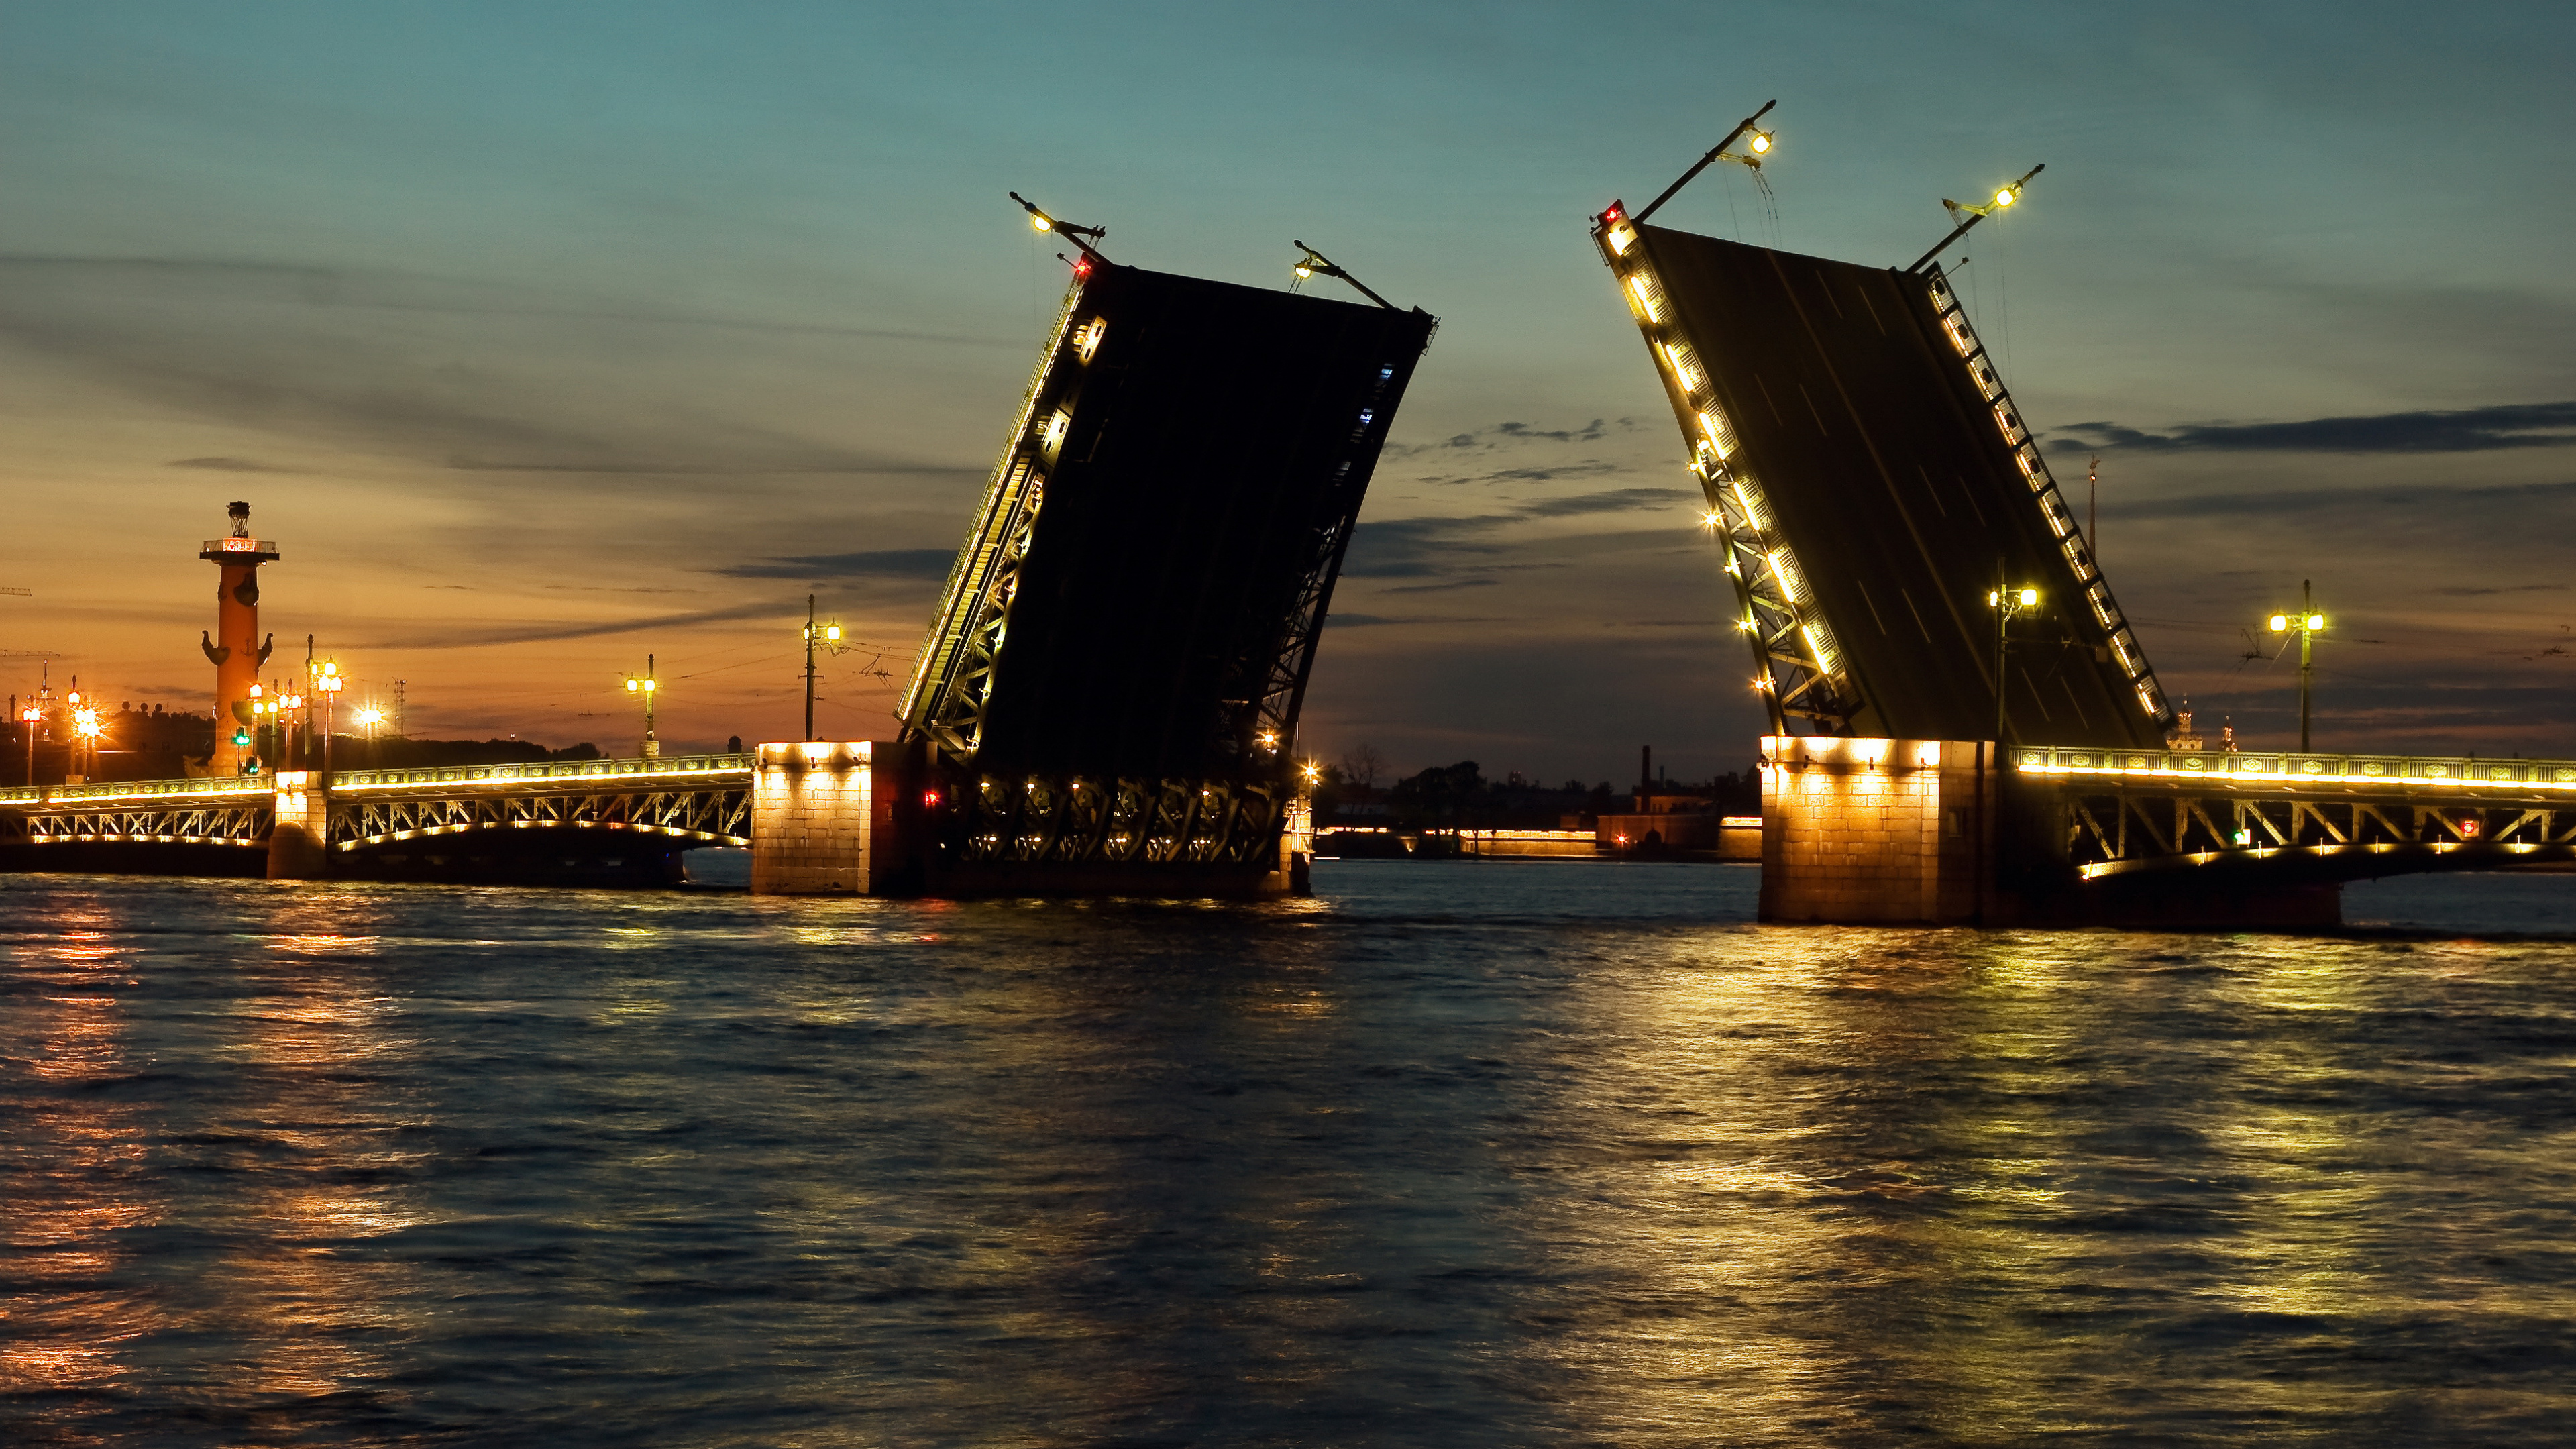 瓦河, 晚上, 可移动座桥, 黄昏, 猩红色的帆 壁纸 3840x2160 允许